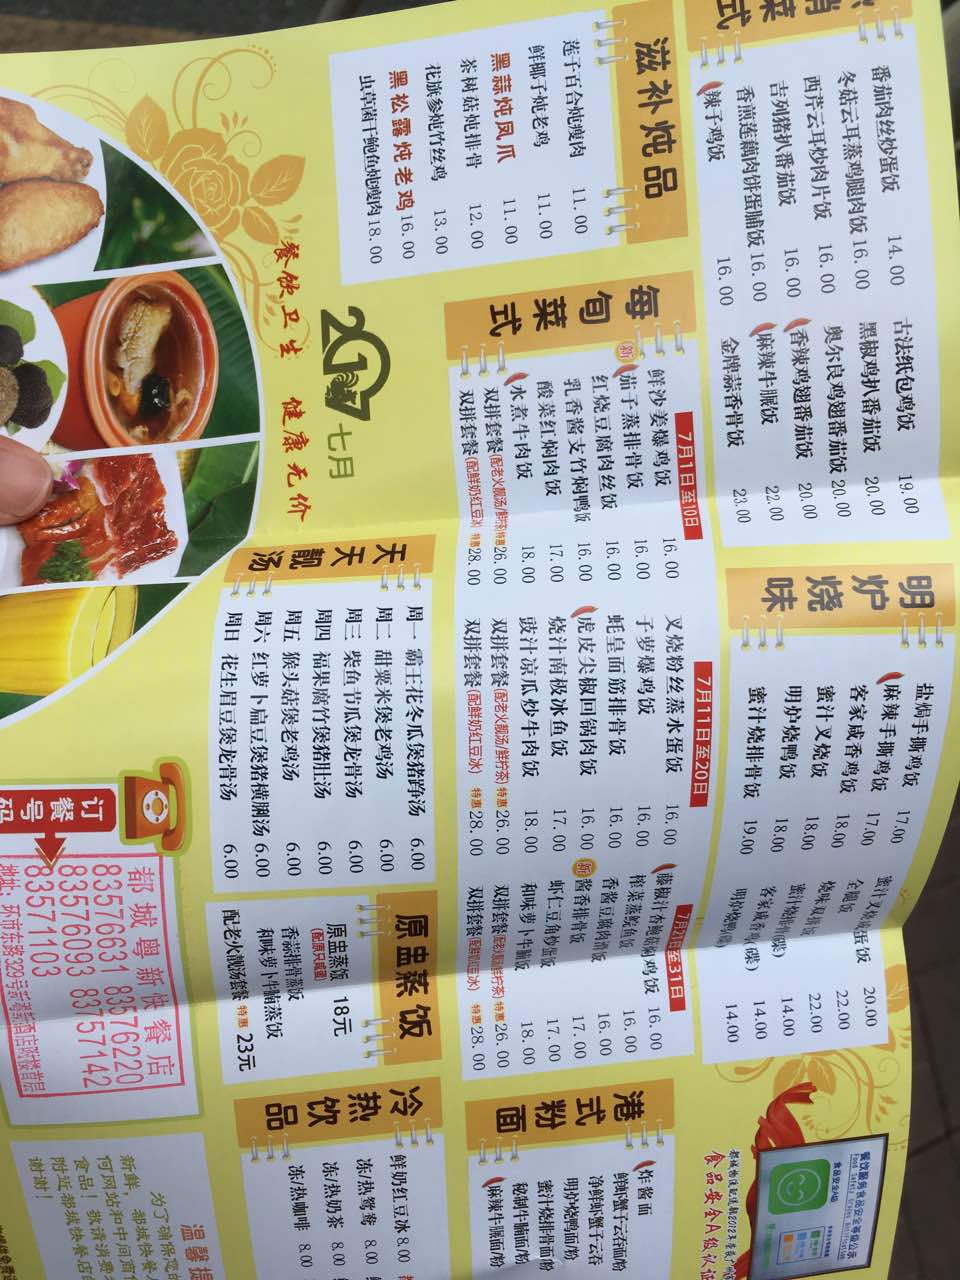 广州都城快餐每月菜单图片